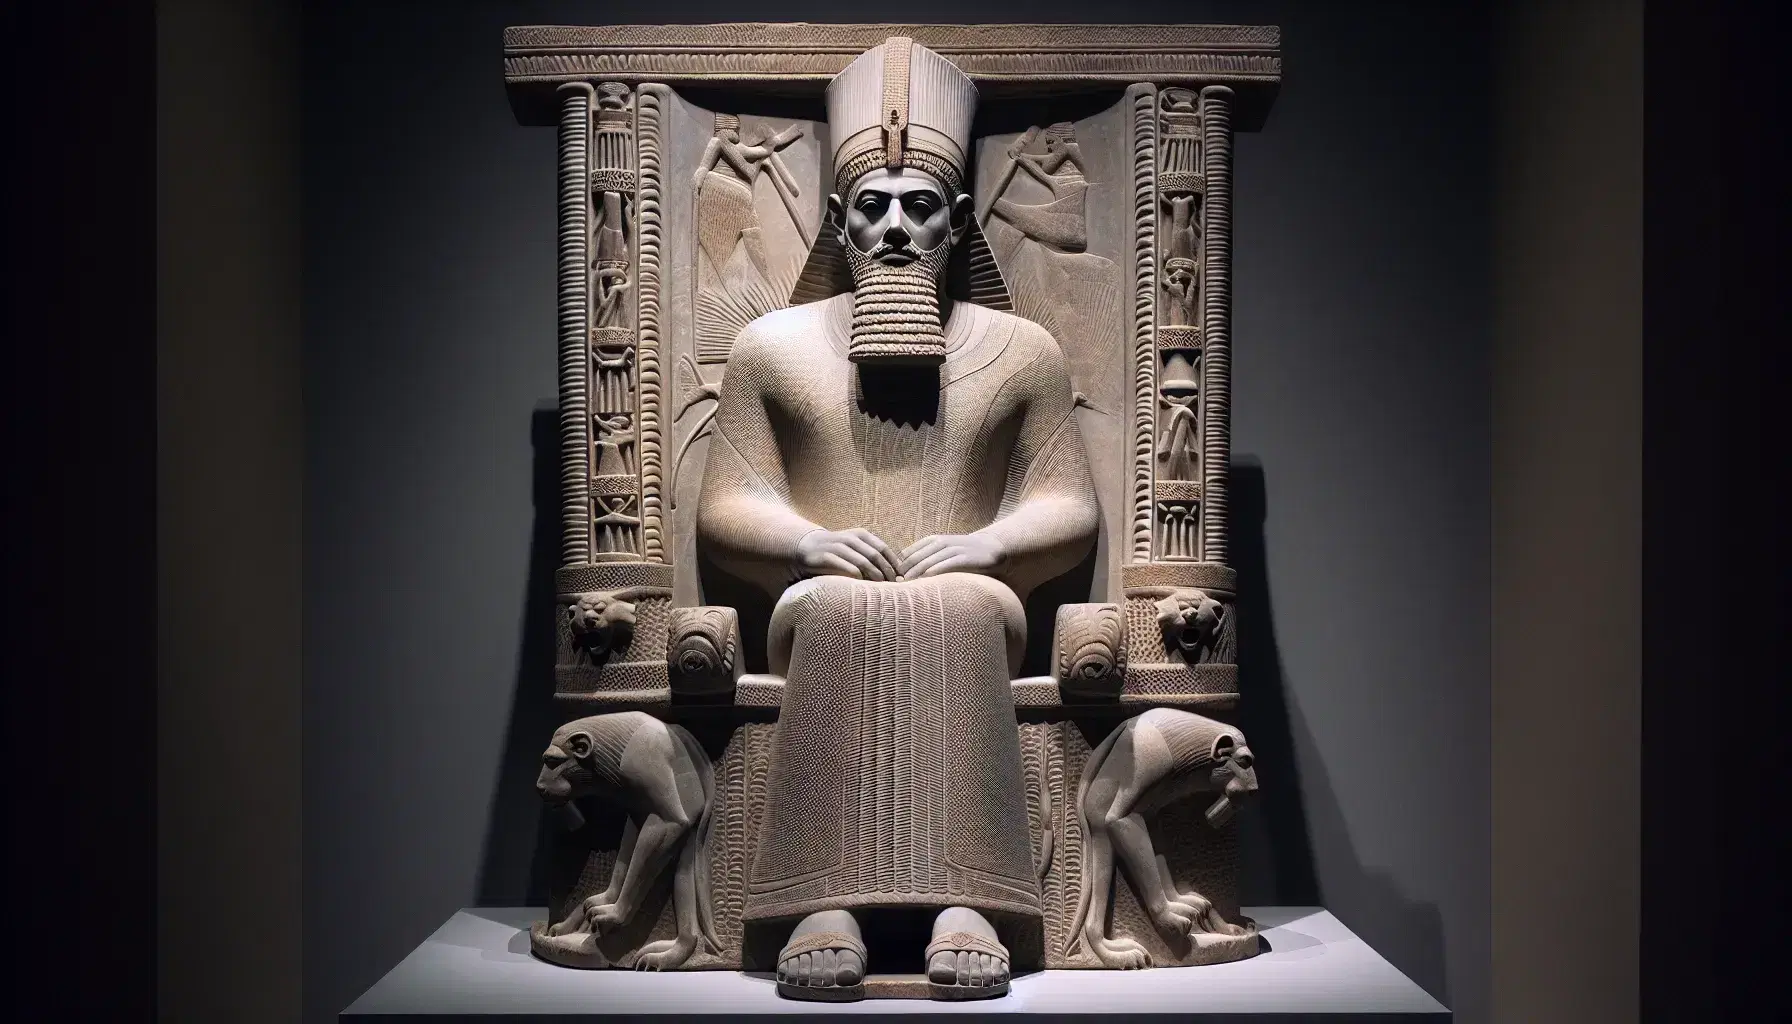 Statua in pietra chiara di Assurbanipal seduto su trono ornato, con tiara decorata, barba riccioluta e sandali lavorati, sotto luce che ne esalta i dettagli.